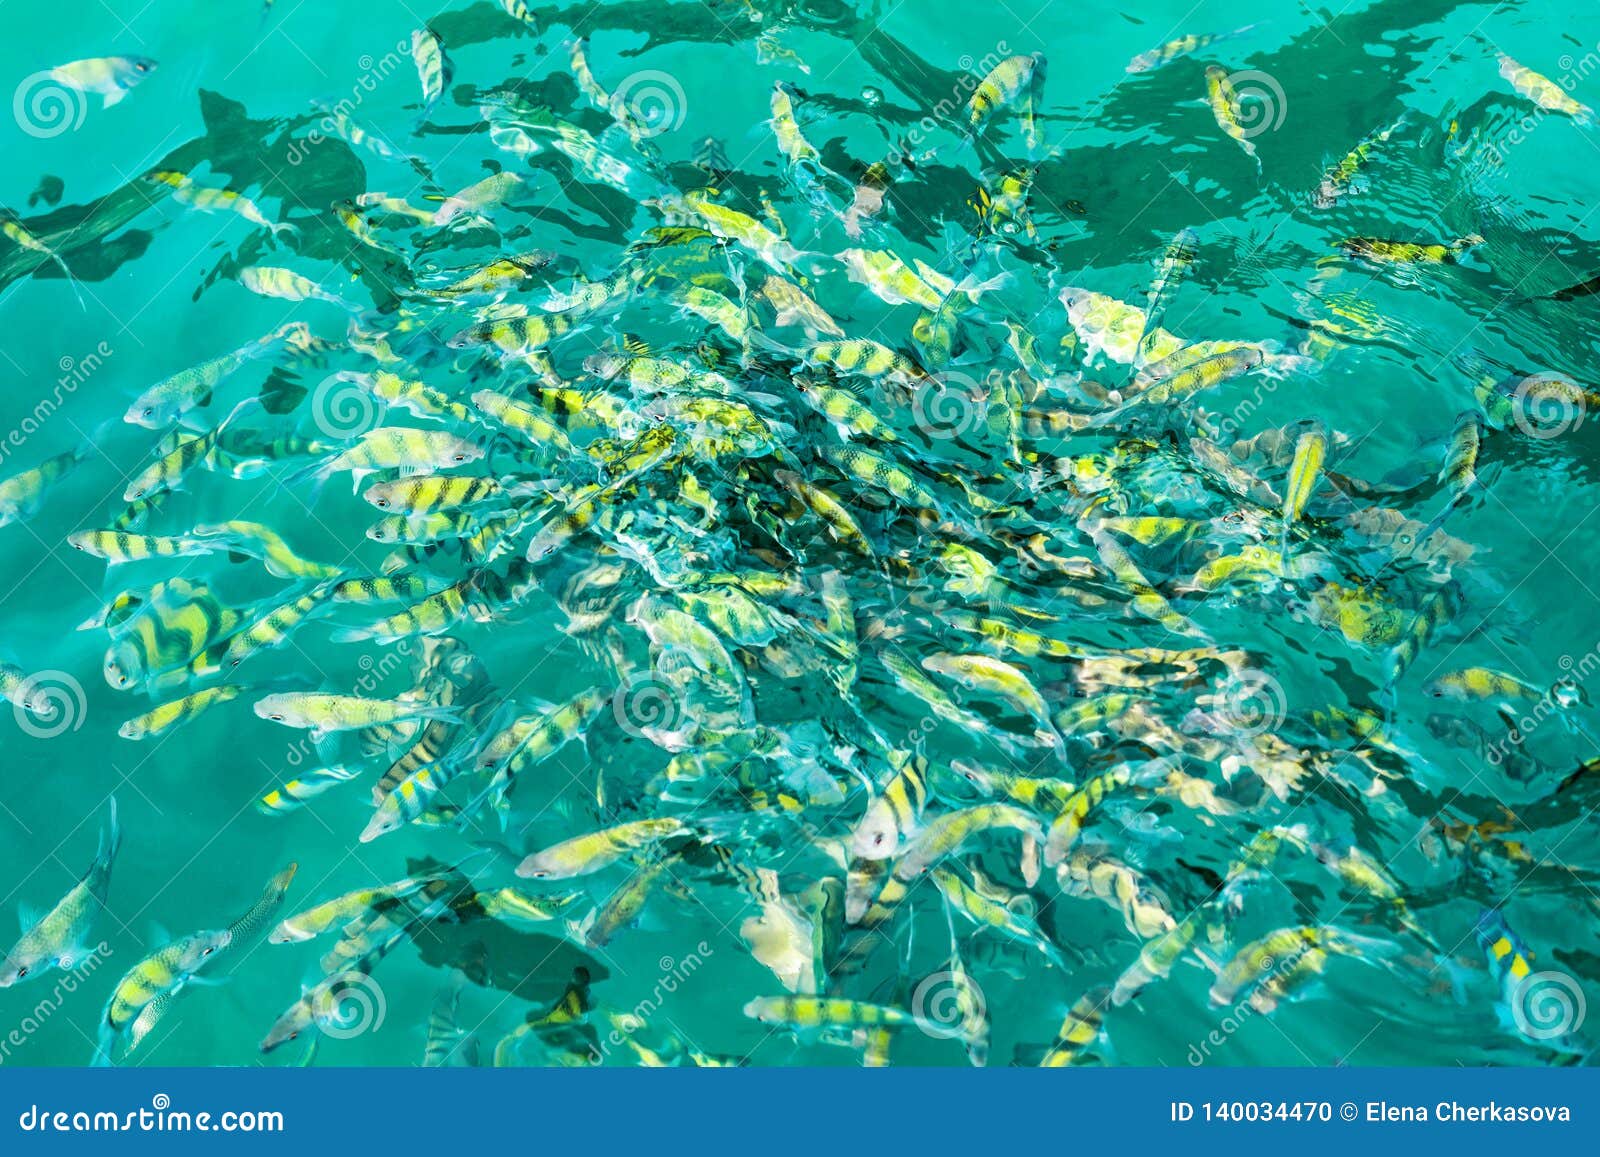 Beautiful Aquarium Crystal Water Small Fish Stock Photo 1172520121